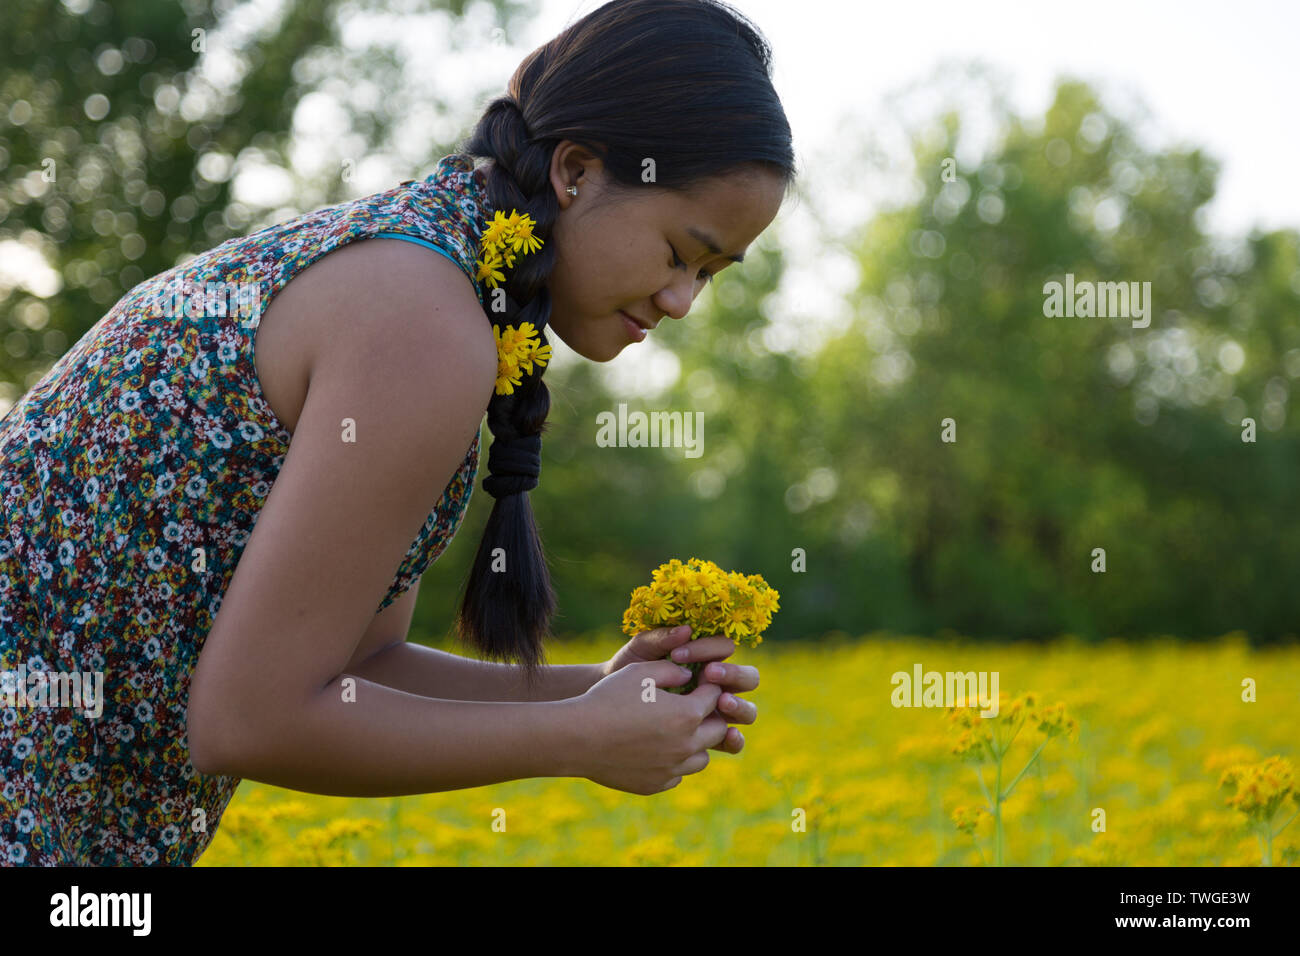 Ein schönes junges Mädchen mit Blumen im Haar macht einen Blumenstrauß in Fort Wayne, Indiana, USA. Stockfoto